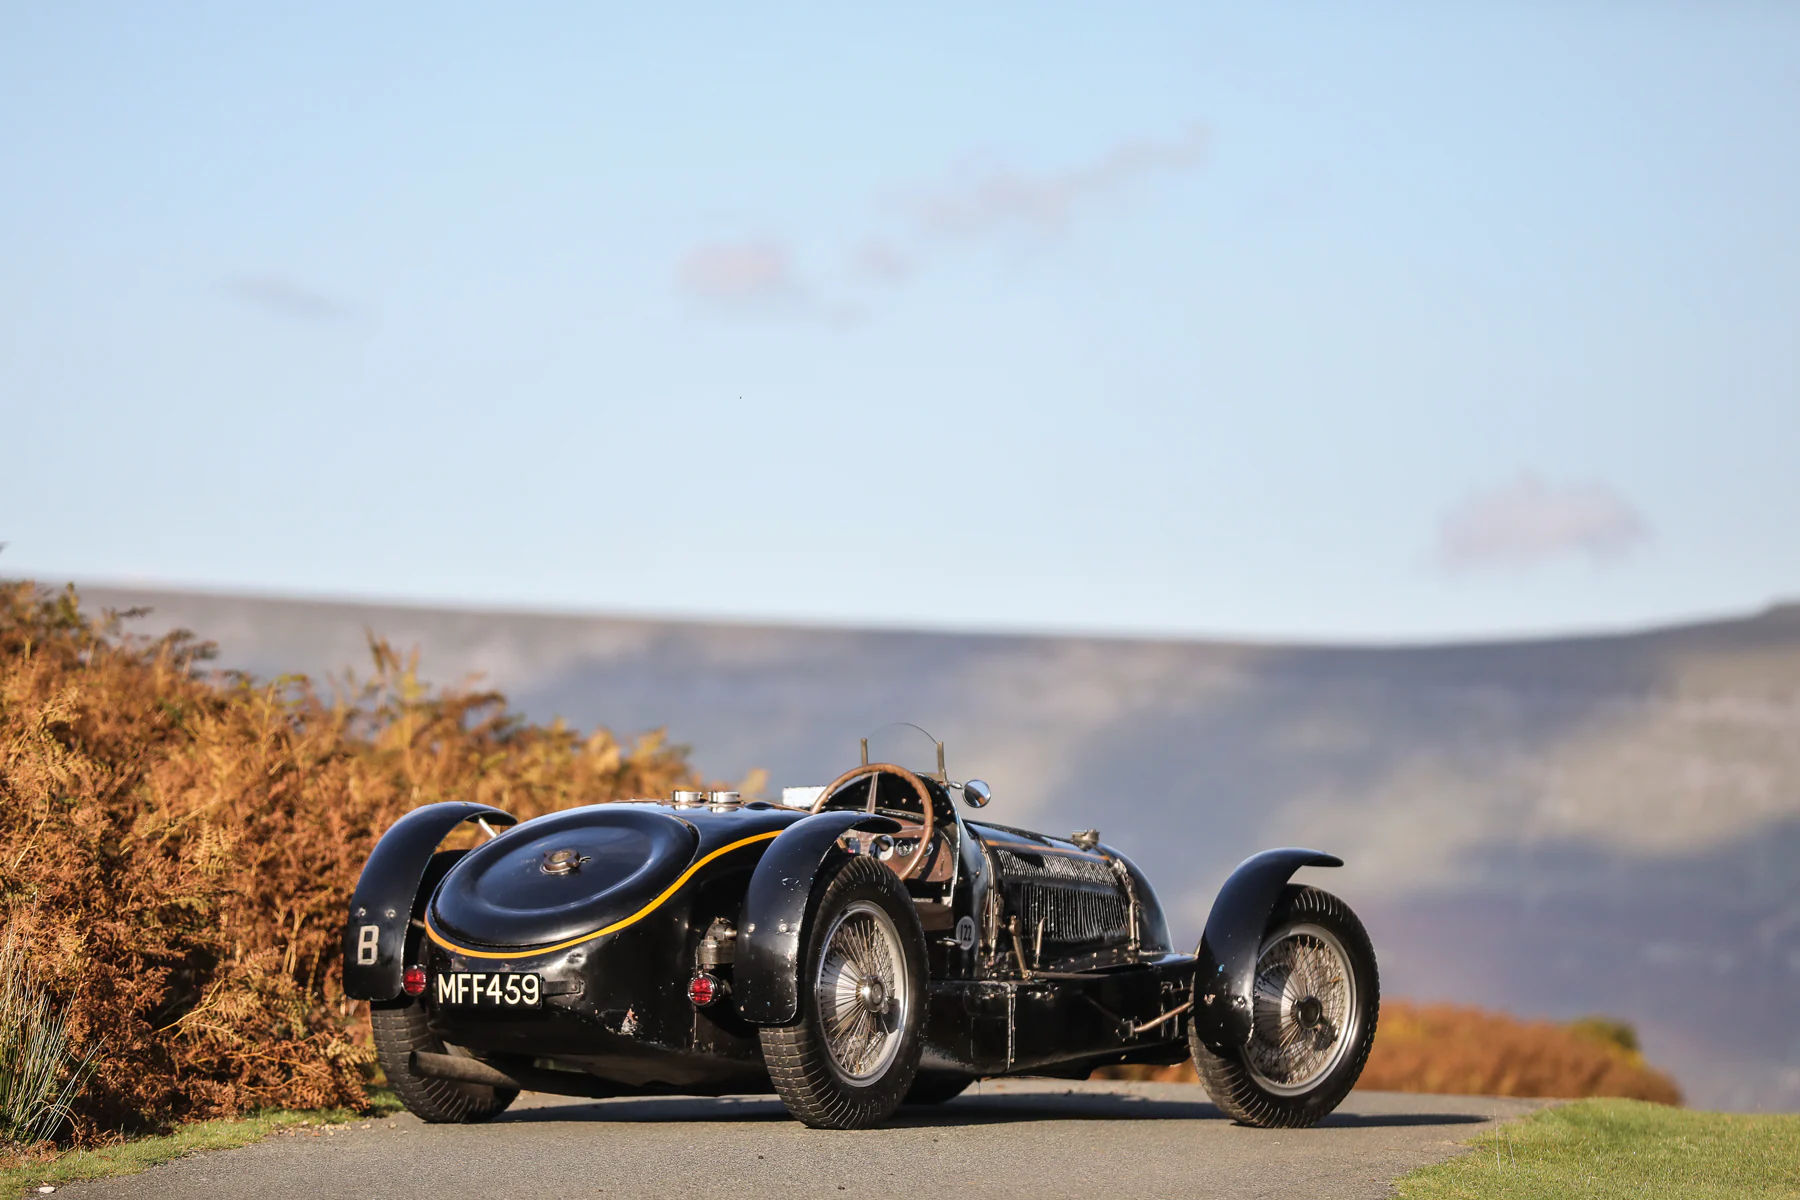 Bugatti Type 59 Sports (chasis 57248). ﻿Un Bugatti Type 59 Sports de 1934 con el número de chasis 57248 fue subastado por USD 12,681 millones en Gooding &amp; Company en Londres en septiembre de 2020. Esto lo convierte en uno de los Bugattis más caros que jamás se haya subastado en una subasta pública. El Bugatti Type 59 Sports fue creado como un coche de carreras para el equipo de fábrica Bugatti Grand Prix y ganó el Gran Premio de Bélgica en Spa, y luego terminó tercero en el Gran Premio de Mónaco. Algunos de los pilotos de carreras de Bugatti más famosos y exitosos estaban al volante de este automóvil, incluidos Robert Benoist, Louis Chiron, René Dreyfus, Achille Varzi y Jean-Pierre Wimille. Después de la exitosa temporada de carreras, Bugatti convirtió el Type 59 en un automóvil deportivo. El rey Leopoldo de Bélgica lo compró en 1937. El vehículo permanece en su estado original, sin restaurar hasta el día de hoy. Está propulsado por un motor de 8 cilindros en línea con una capacidad de 3,3 litros y un sobrealimentador. La potencia de salida fue de alrededor de 250 PS; otras variantes de motor alcanzaron hasta 380 CV en el Tipo 59, que se fabricó hasta 1936.